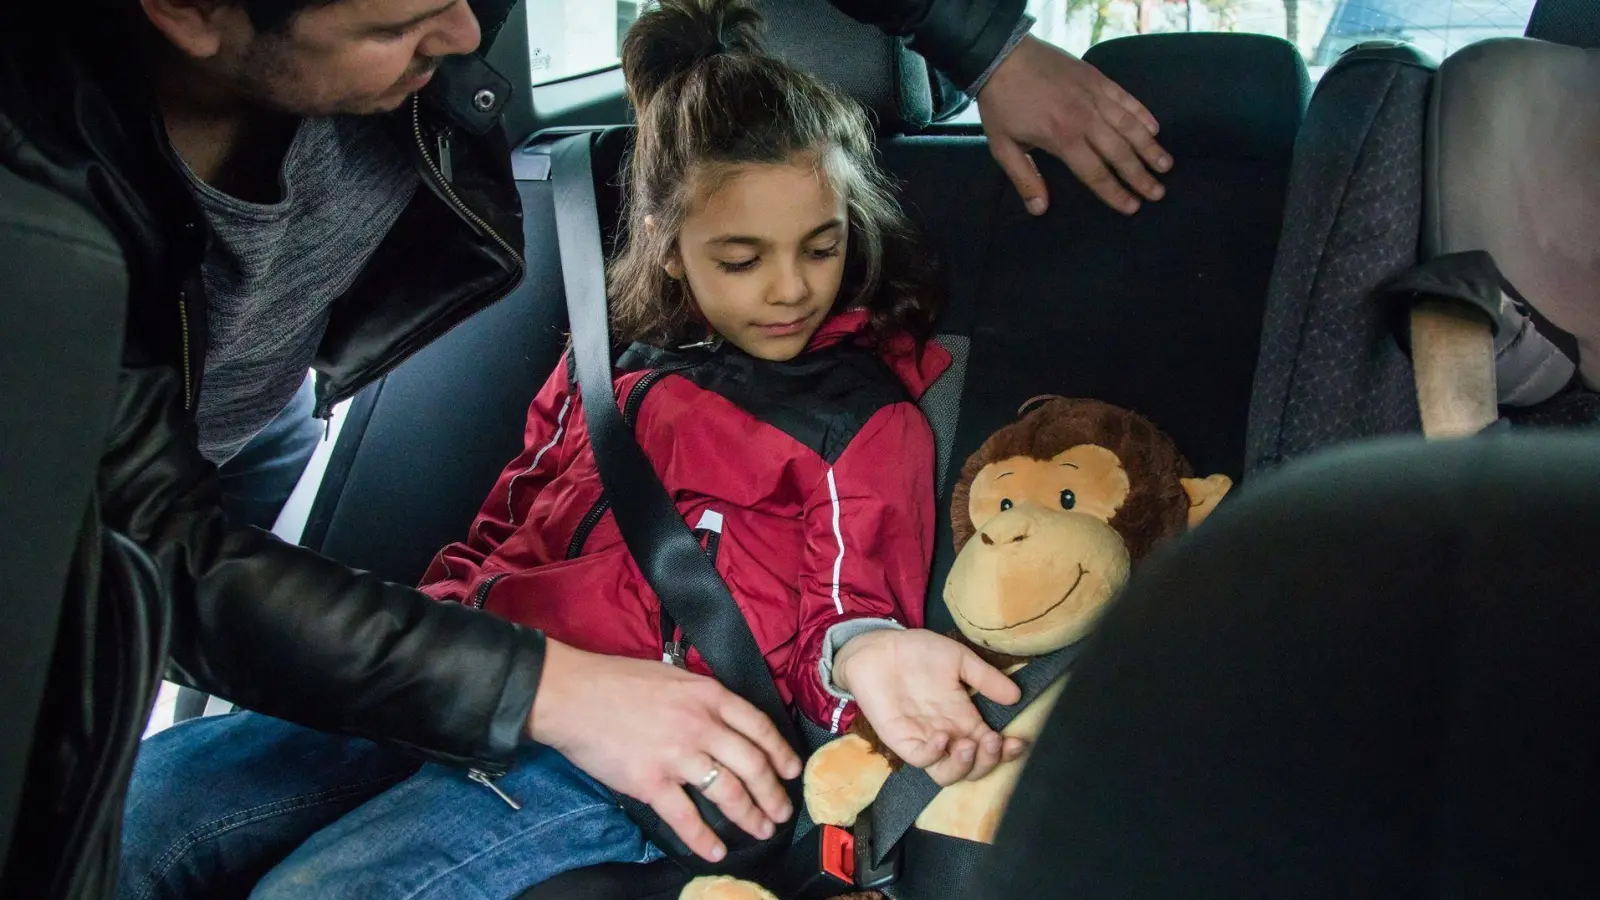 So fährt das Kind sicher im Auto mit - selbst das Kuscheltier ist angeschnallt. (Foto: Christin Klose/dpa-tmn/dpa)